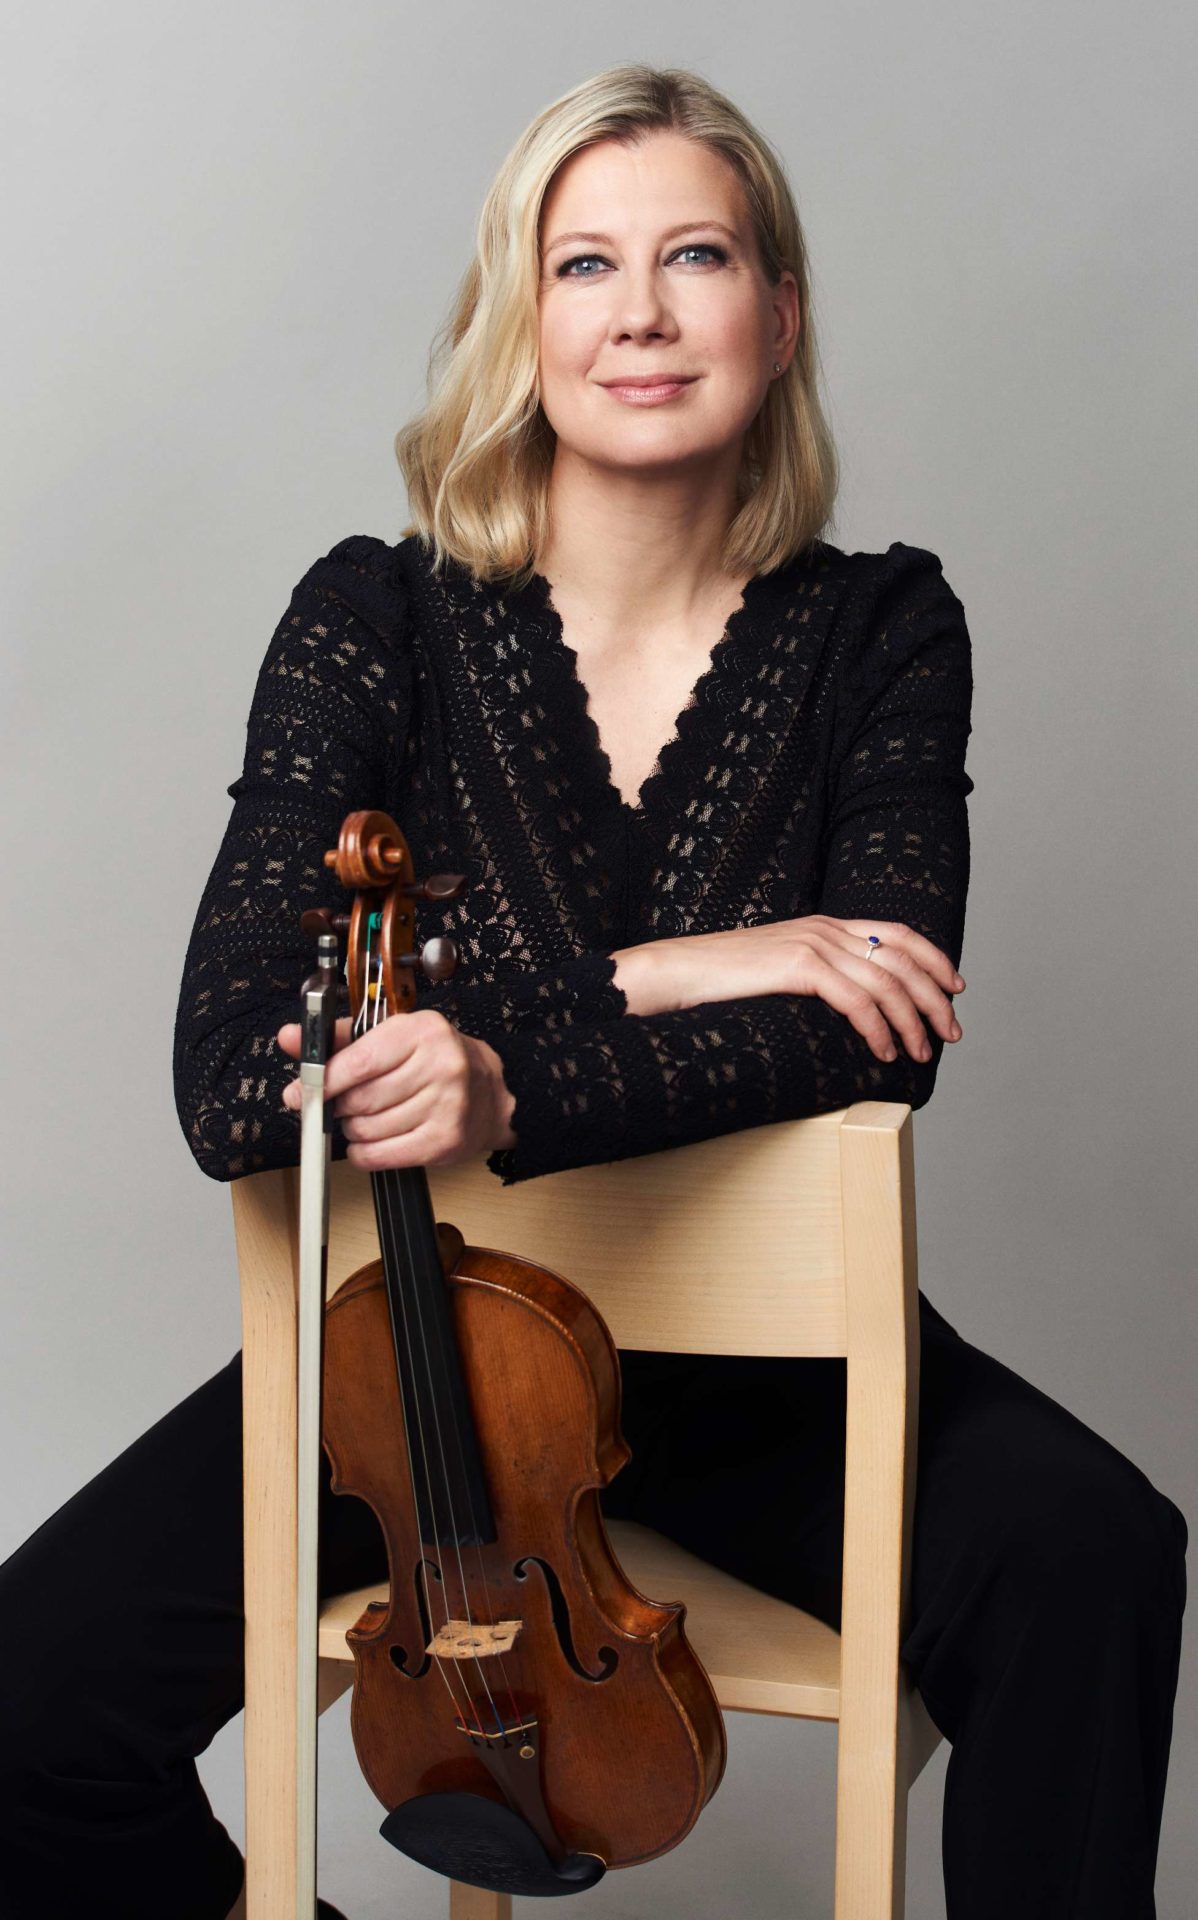 Naantalin Musiikkijuhlien taiteellinen johtaja viulisti Elina Vähälä istuu tuolilla ja pitää viulua kädessään.